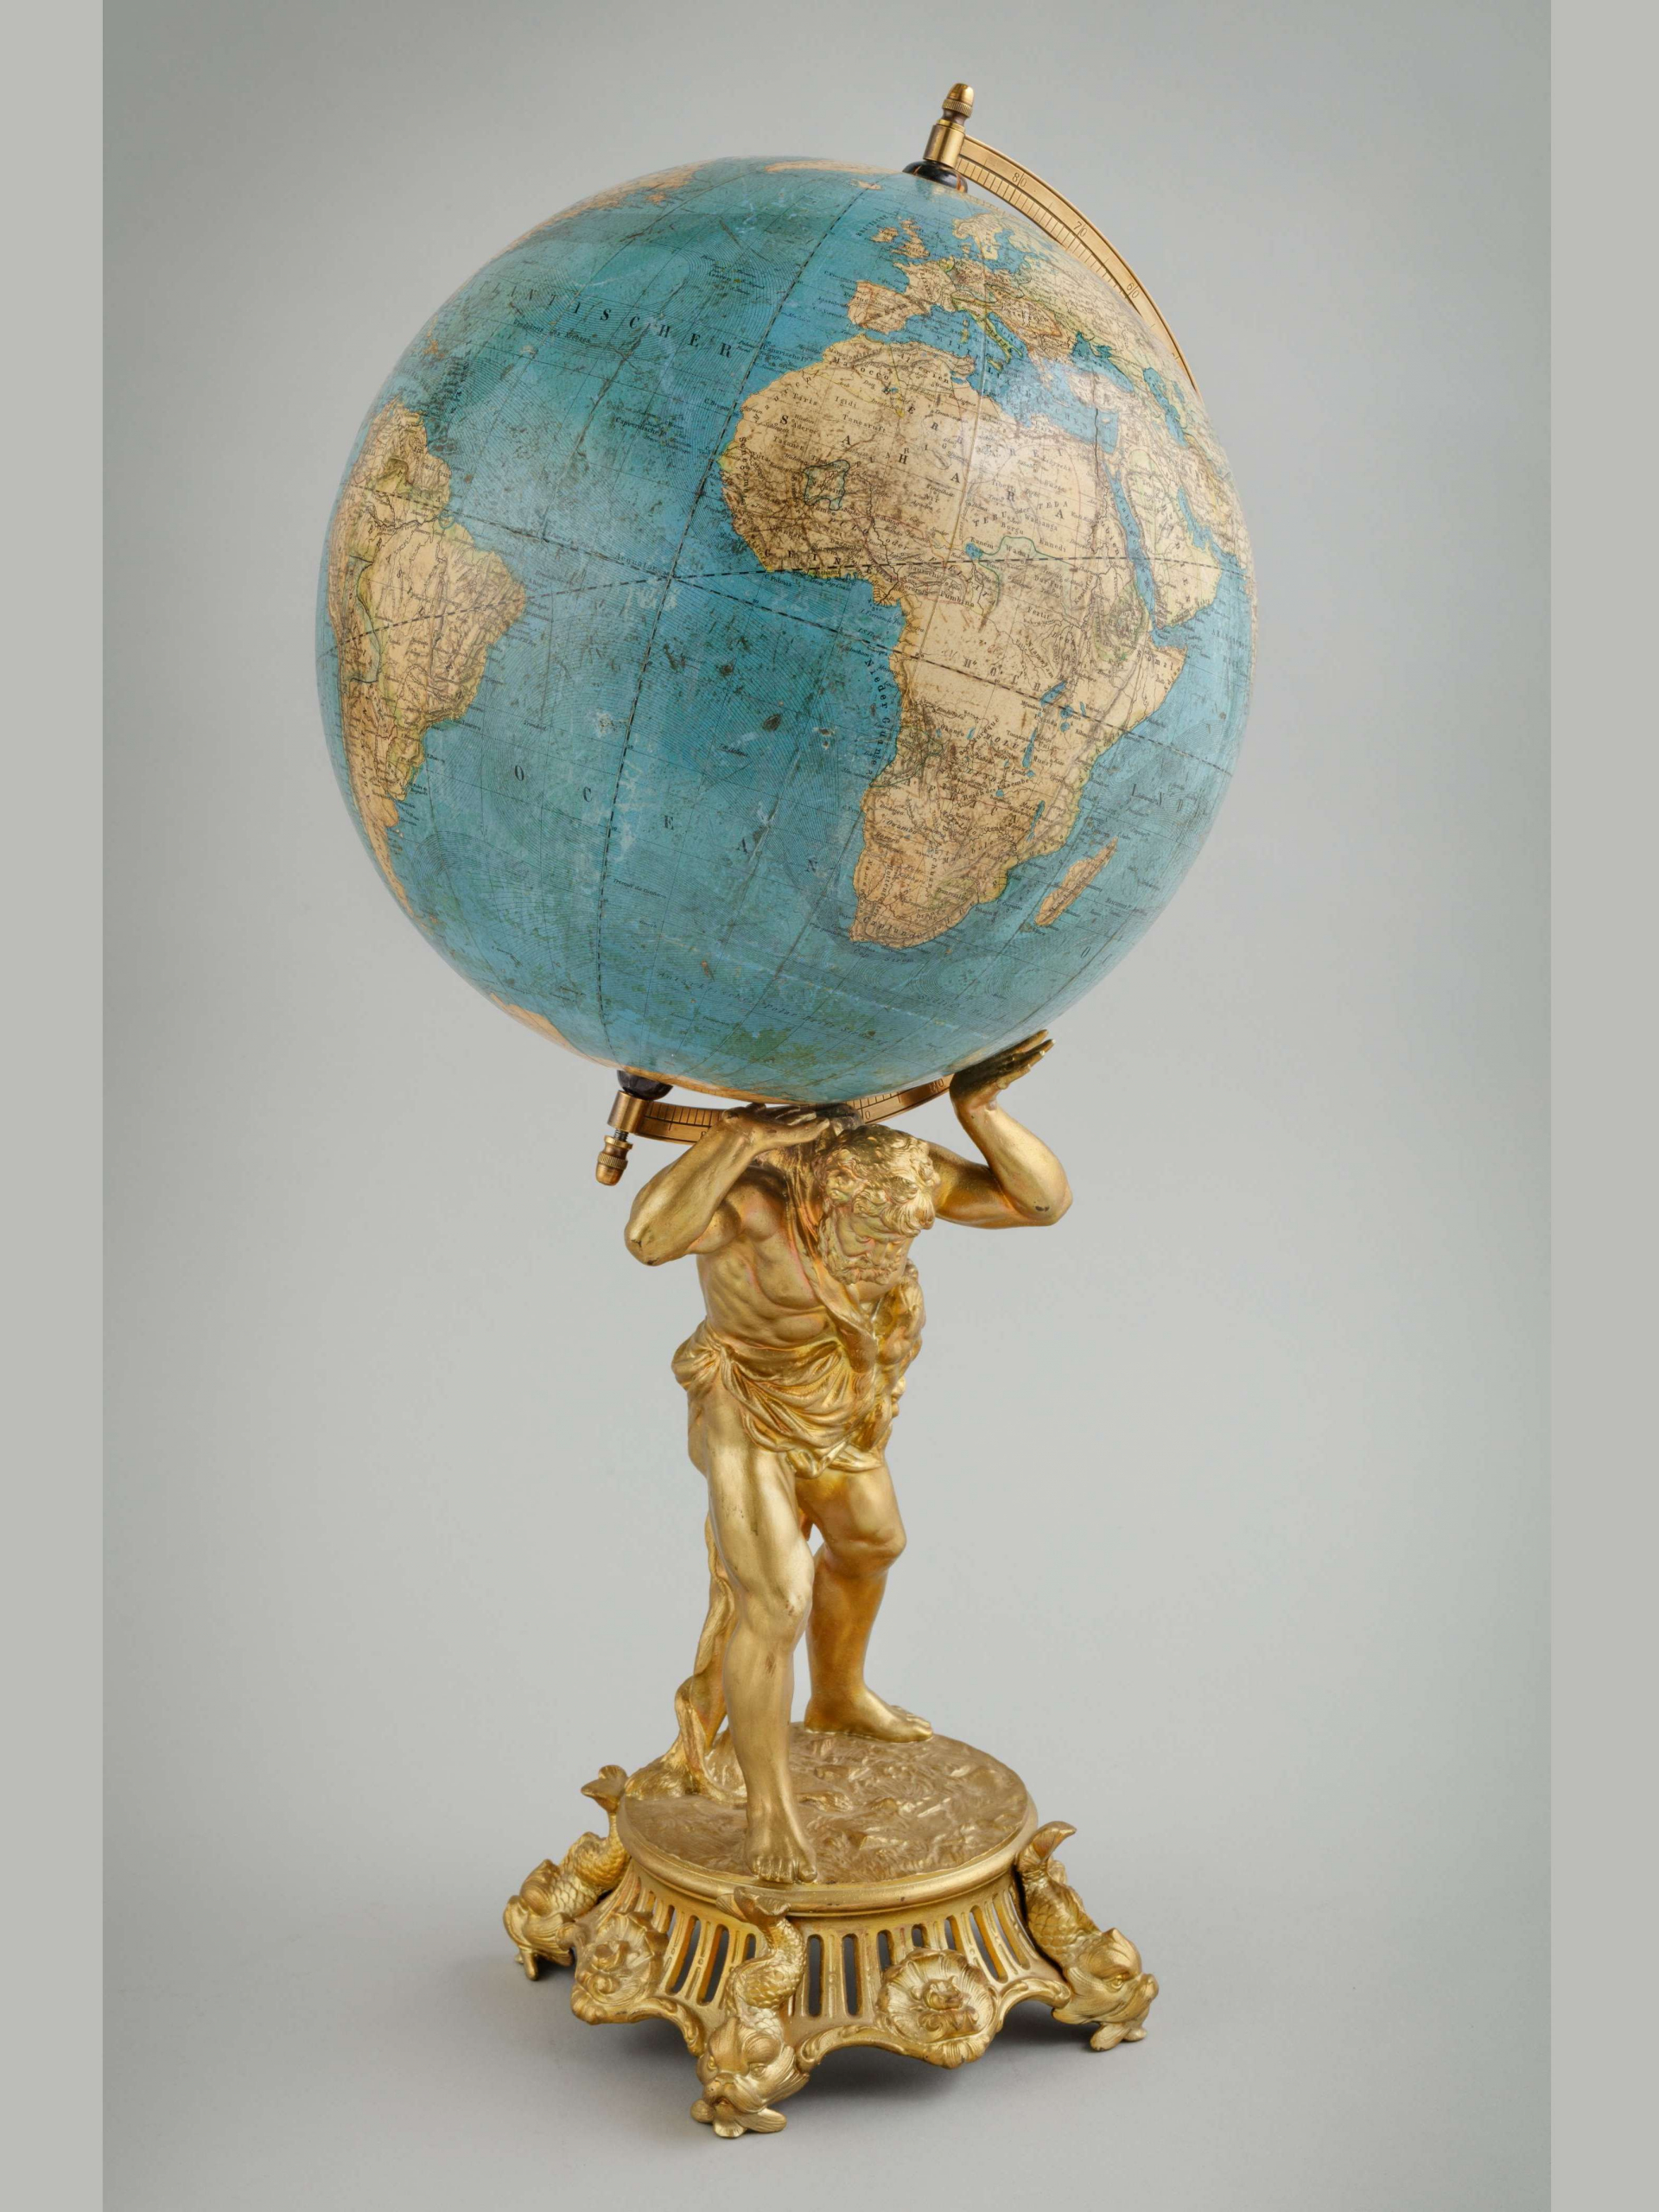 Erdglobus, terrestrial globe, Schotte